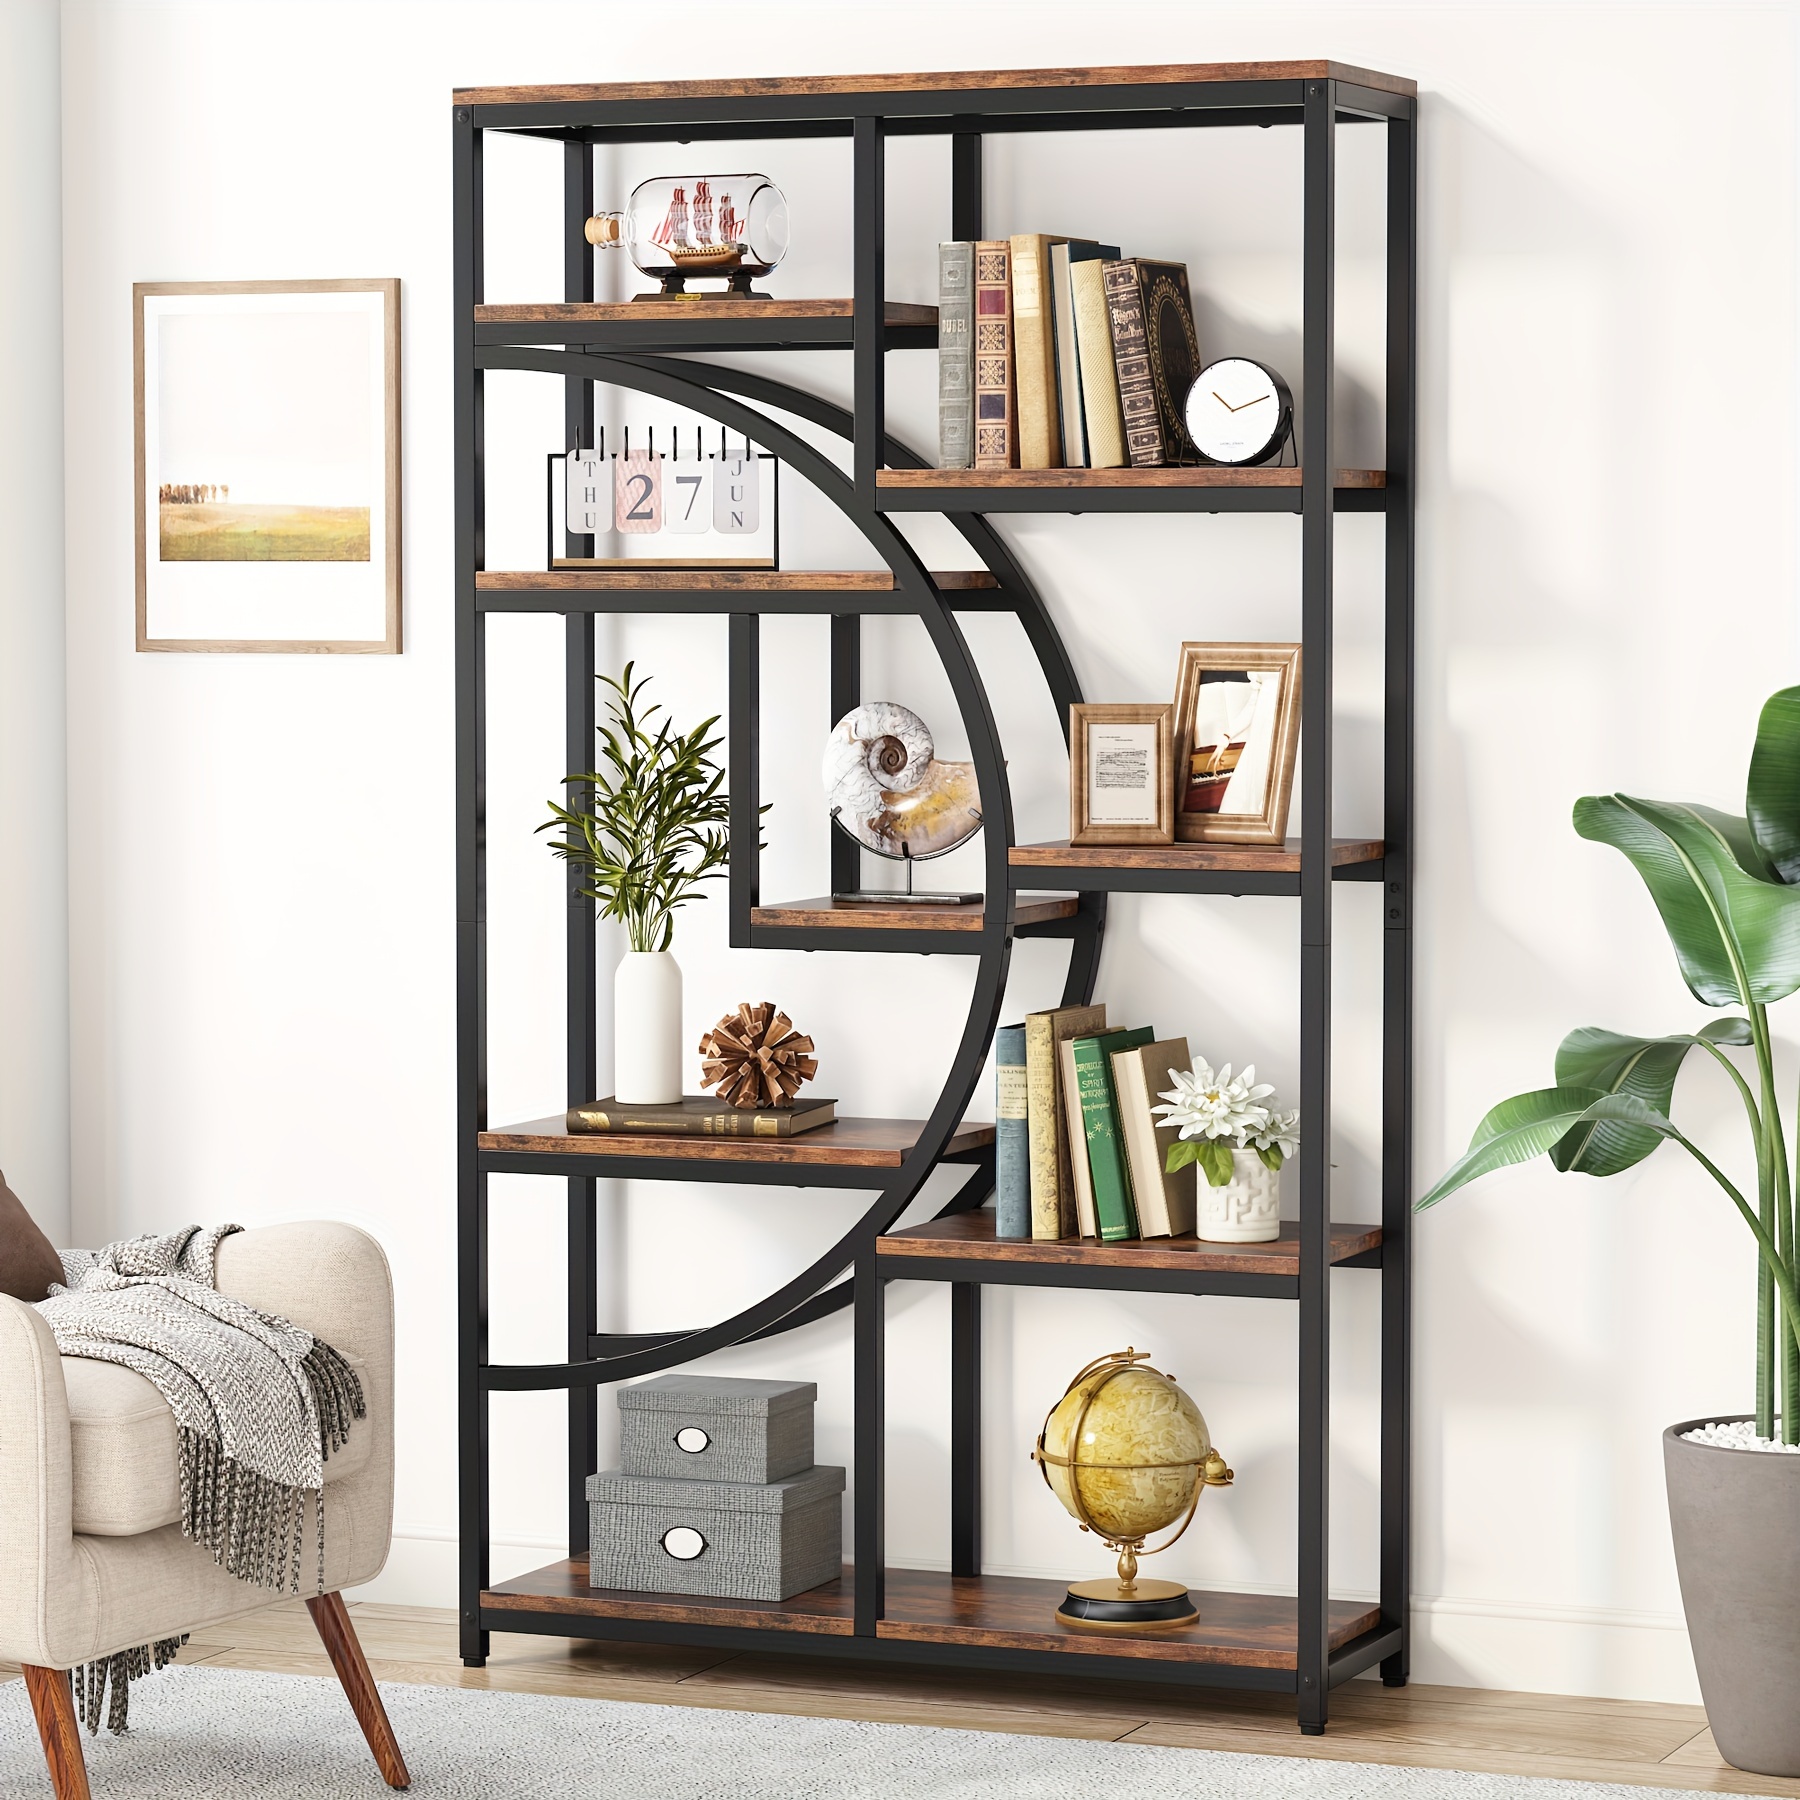 

Little Tree 5-tier Magazine Rack, Freestanding Bookshelf For Bedroom, Living Room